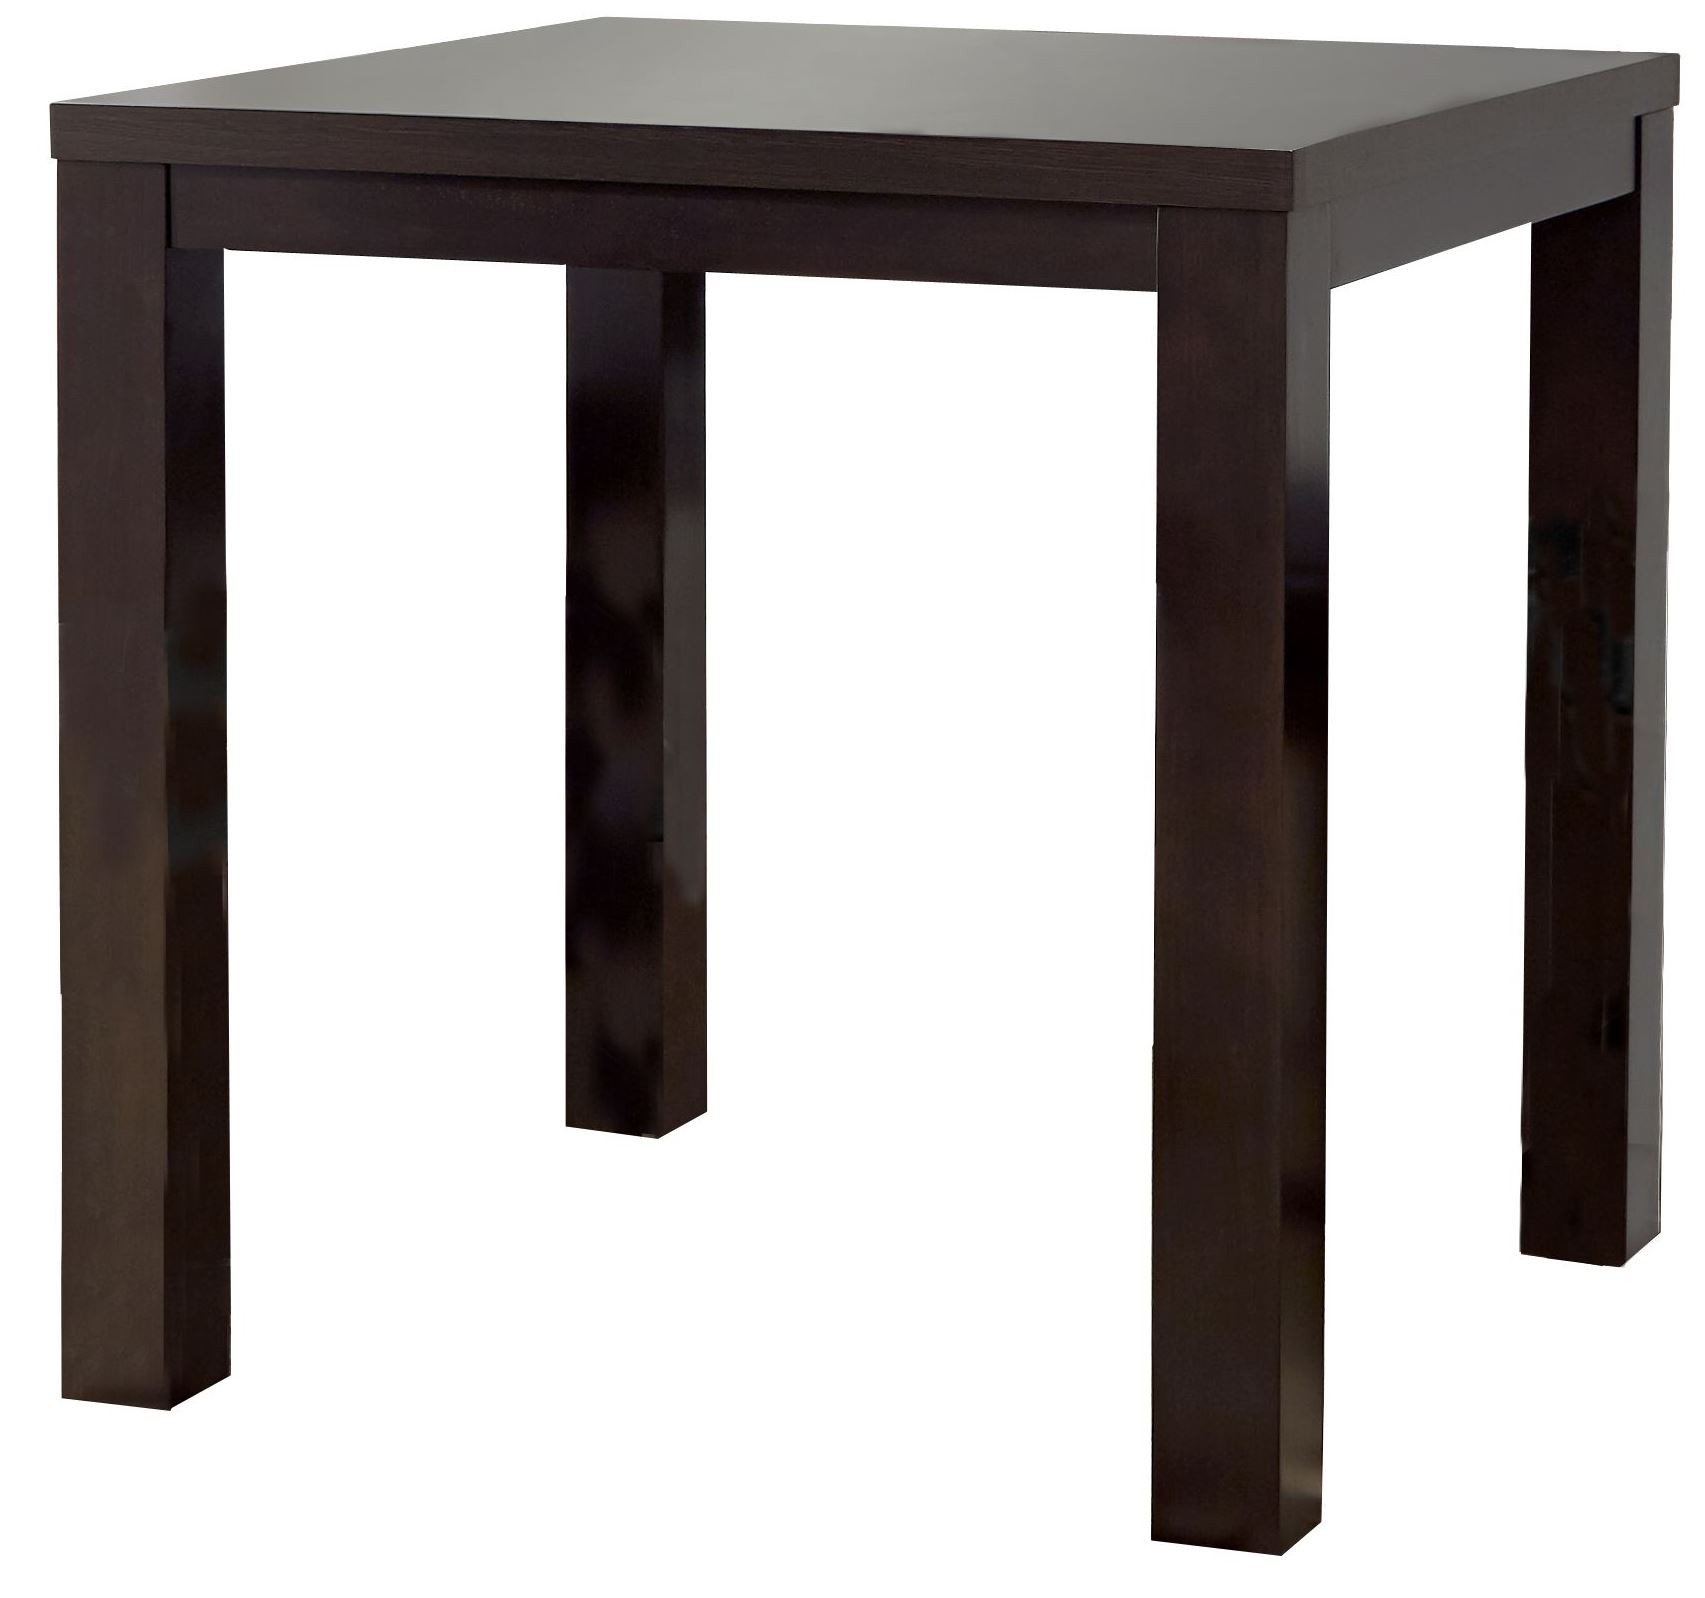 Progressive Furniture Athena Square Counter Dining Table